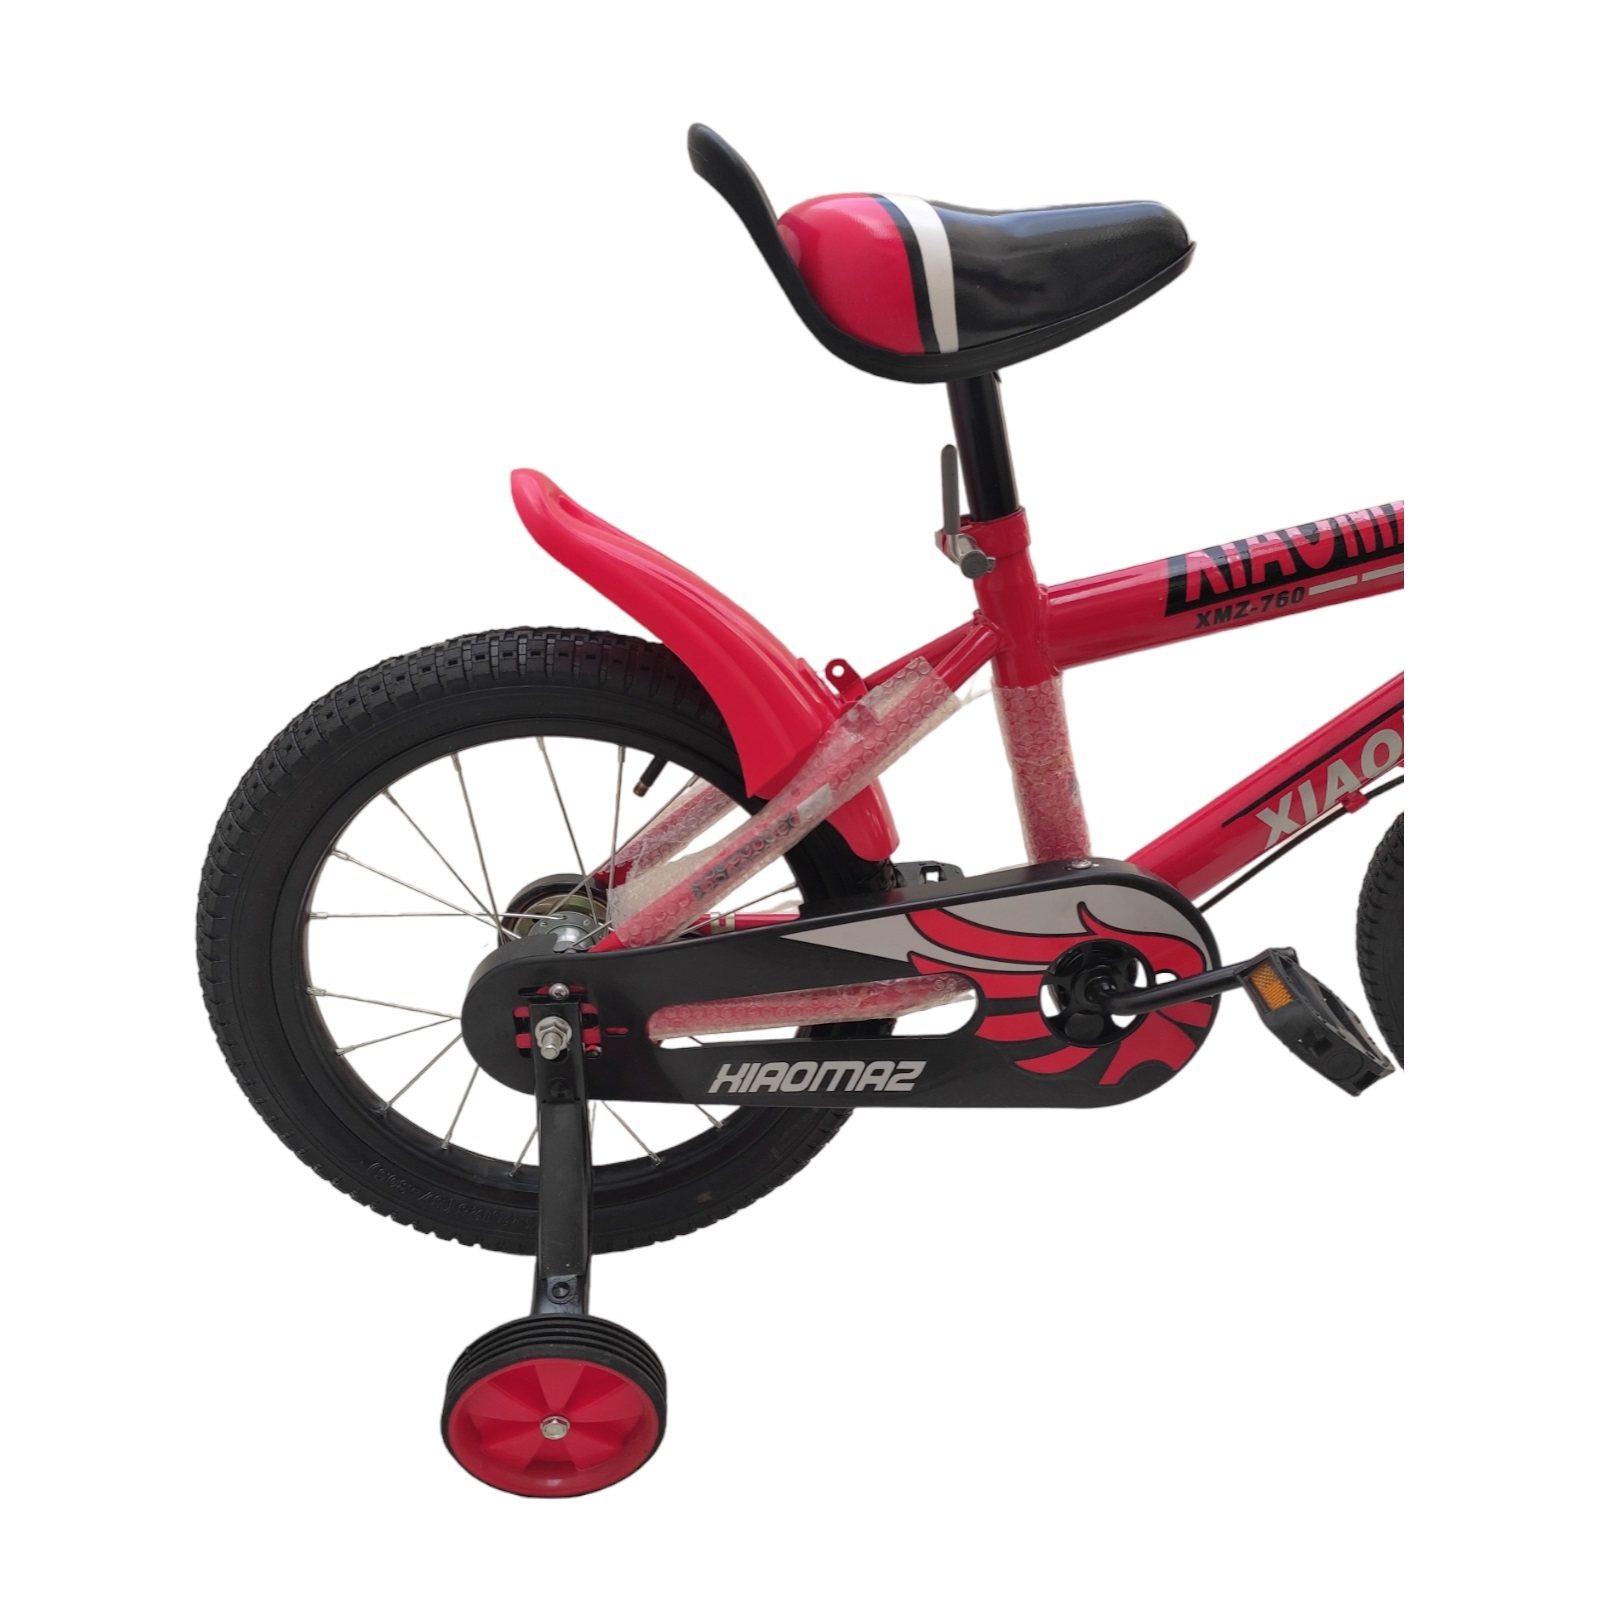 Bicicleta R16 1v Con Ruedas De Entrenamiento, Edad 4-6 Años para Niños Rojo  REGALOMEX YC011624-ROJO